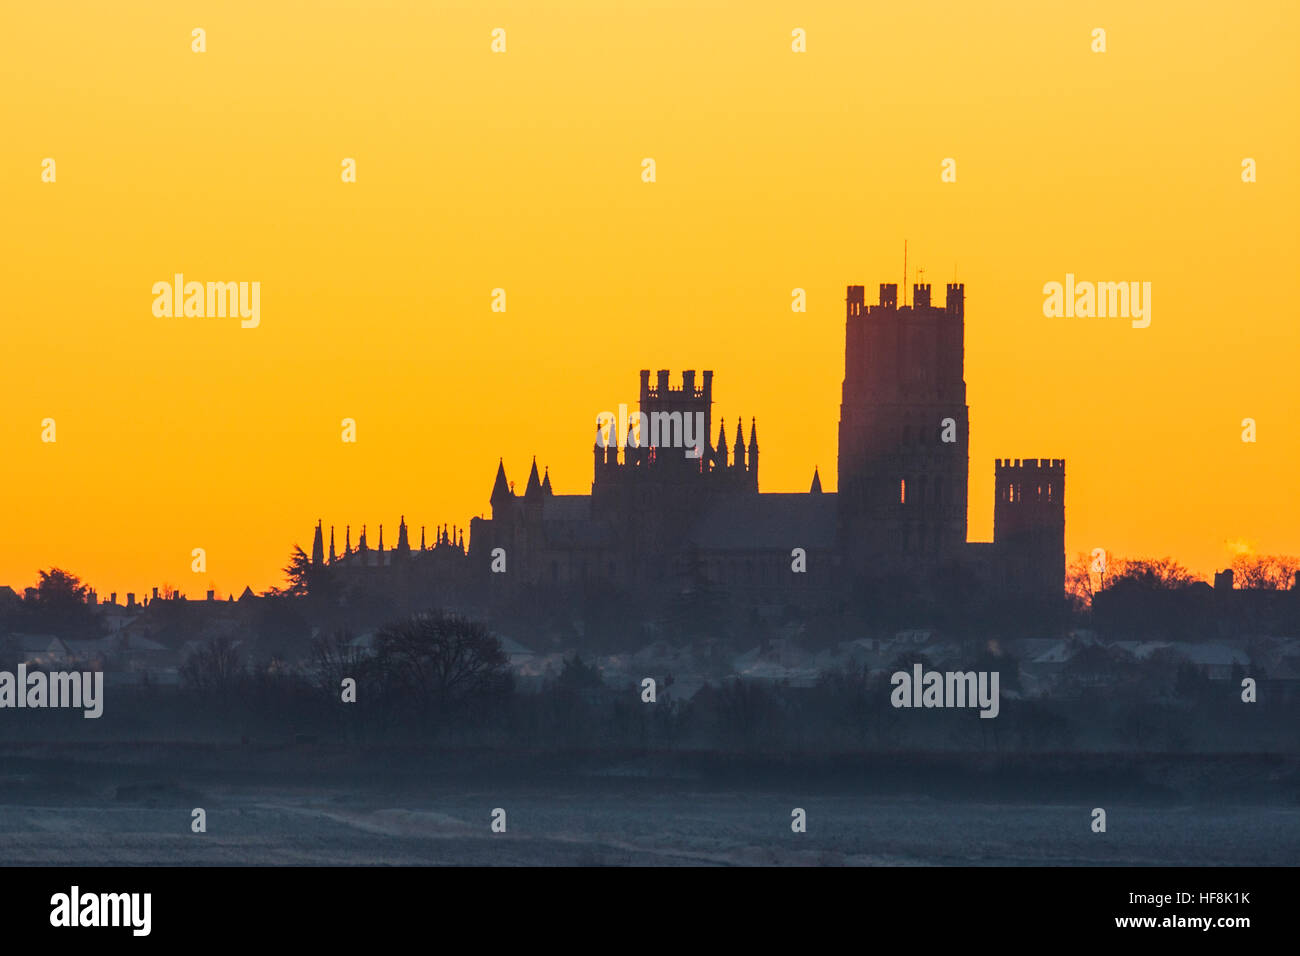 Cathédrale d'Ely, Cambridgeshire, Royaume-Uni. 29 Décembre, 2016. silhouetté contre un ciel aube lumineuse avec une forte gelée. Prises le 29 décembre 2016 Crédit : Simon étrier/Alamy Live News Banque D'Images